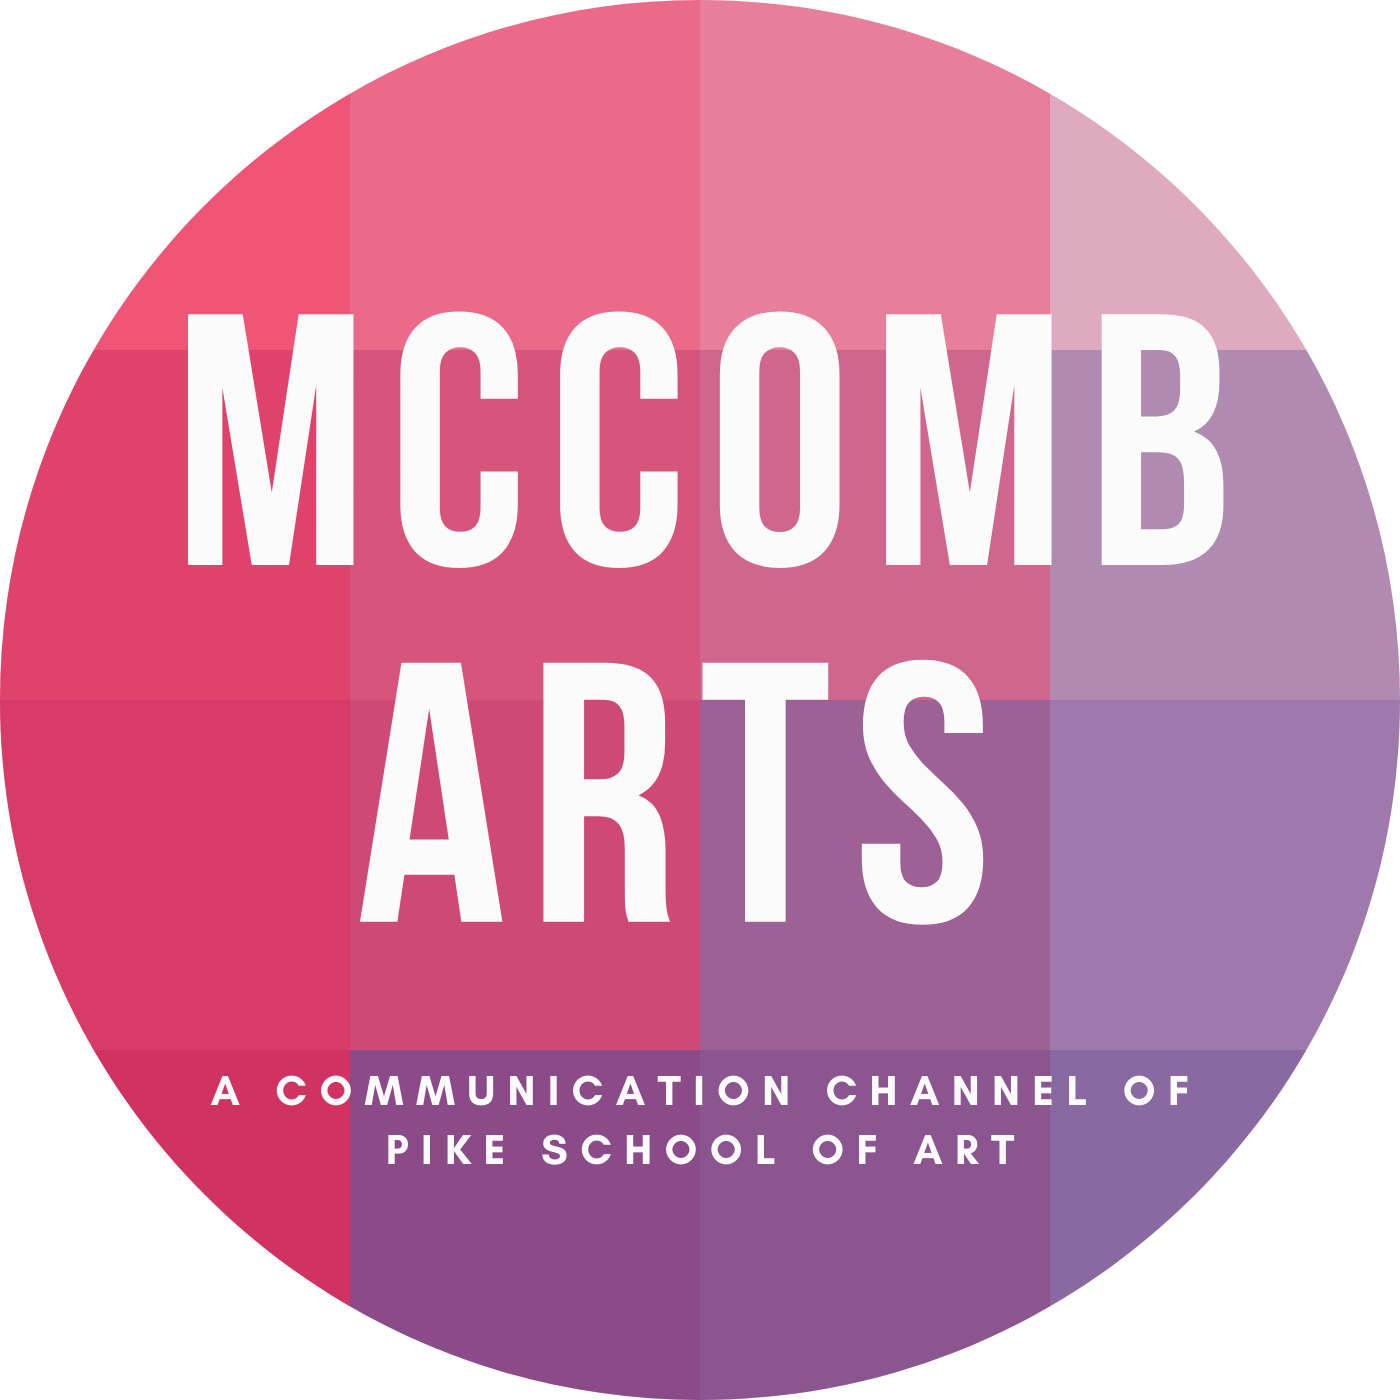 McComb Arts